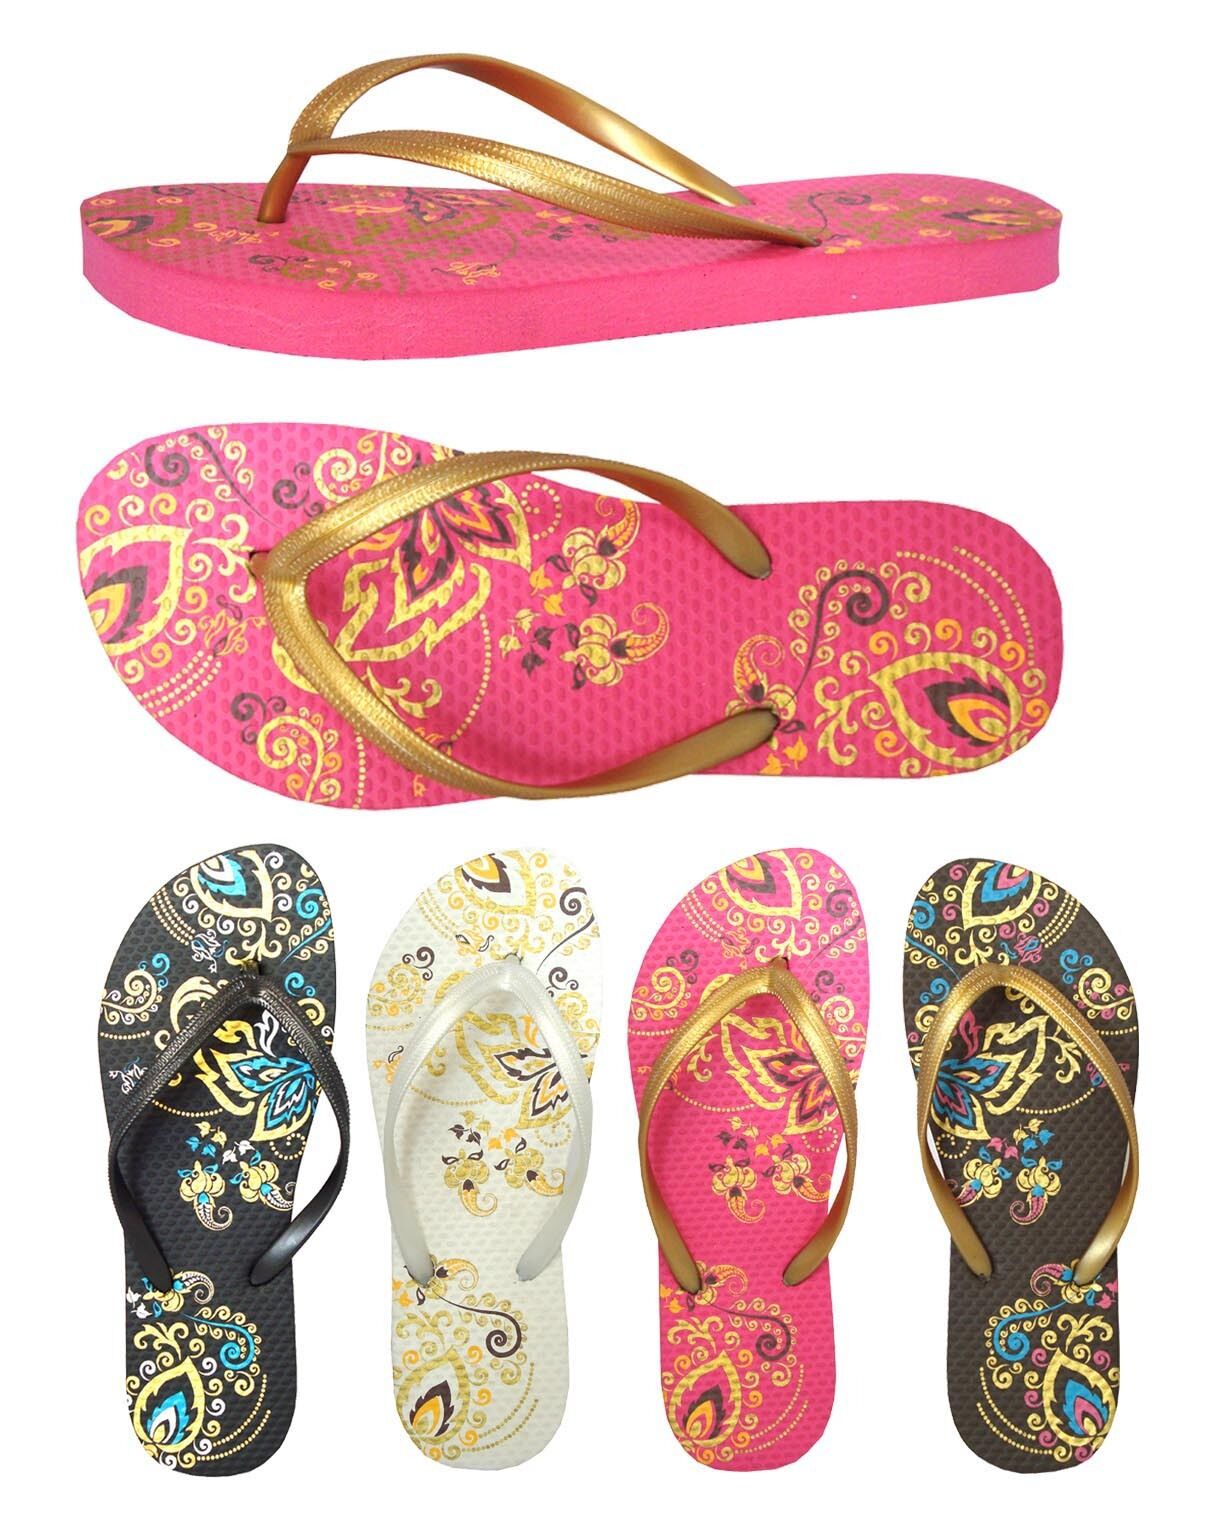 Wholesale Lot 24 pairs Men~Women~Girls Beach Sandals Flip Flop Flower Printing redvolution Flowers - фотография #2